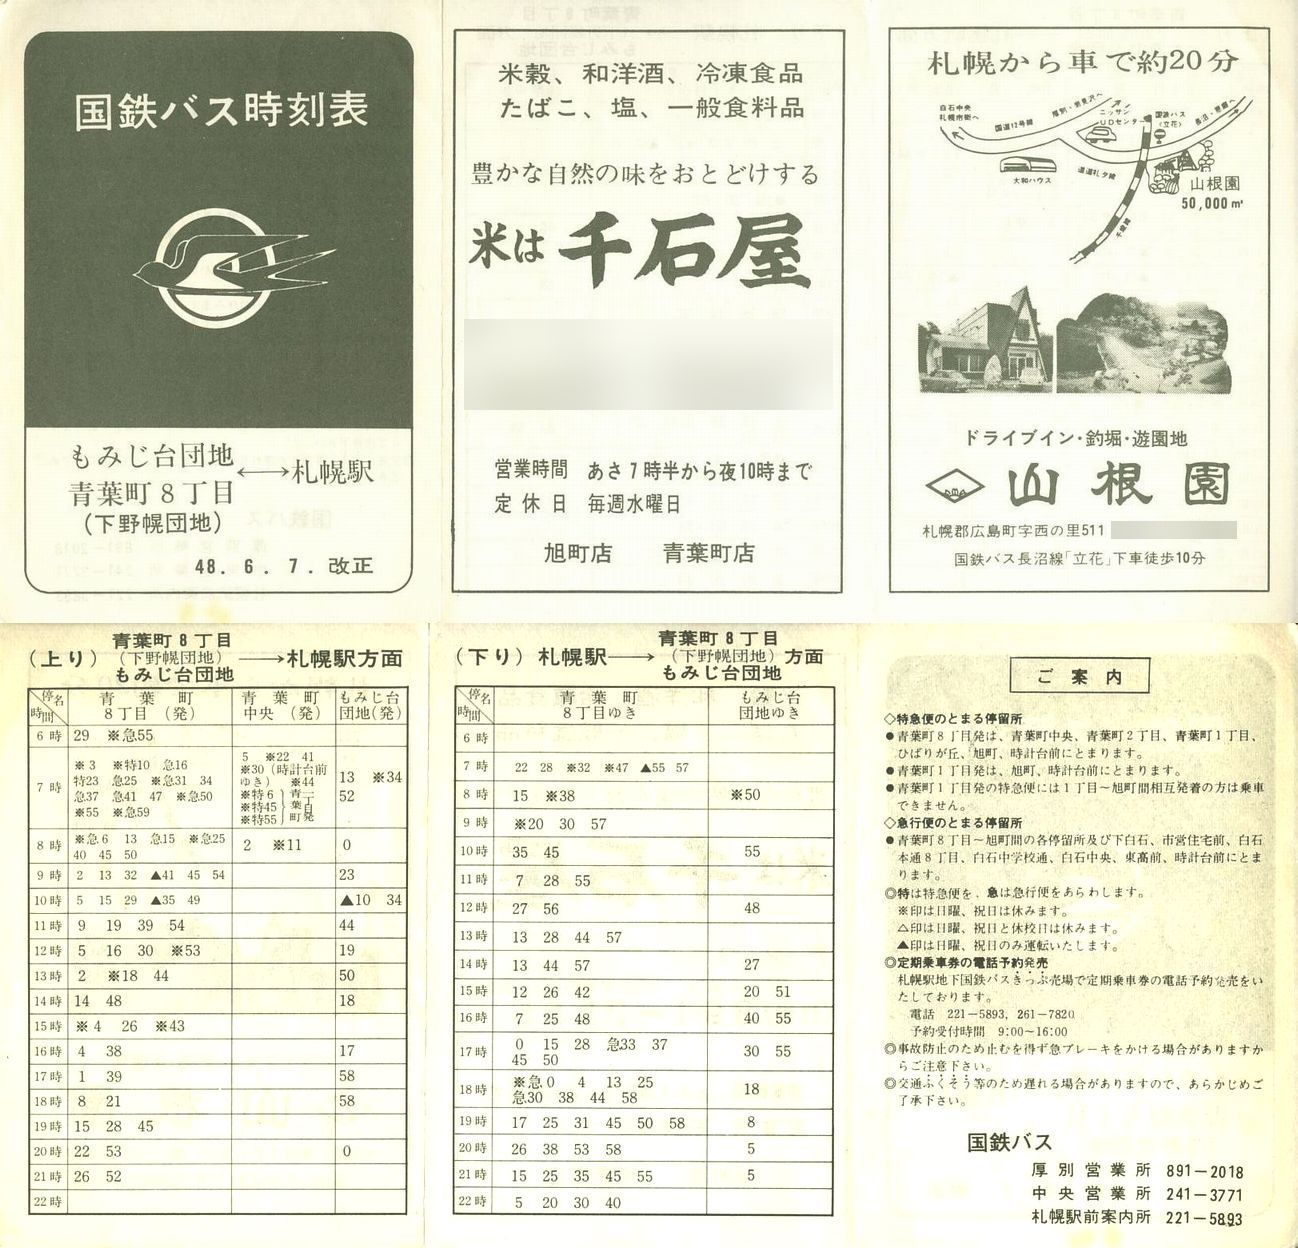 1973-06-07改正_国鉄バス_空知線もみじ台方向時刻表